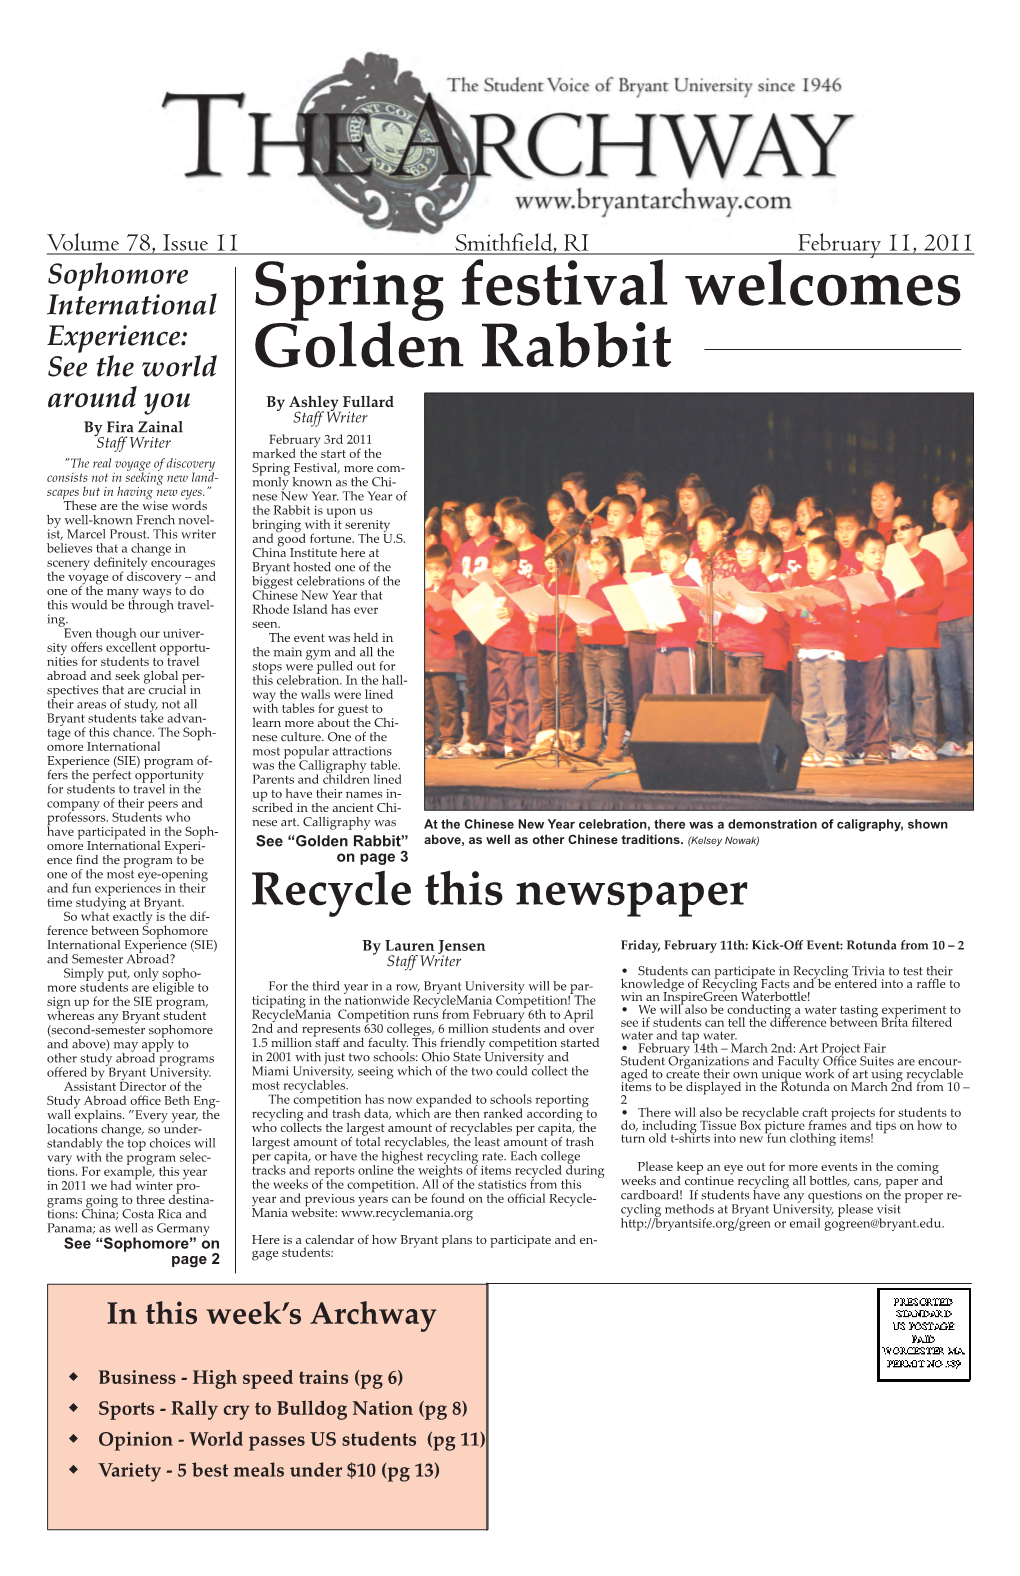 V. 78, Issue 11, February 11, 2011